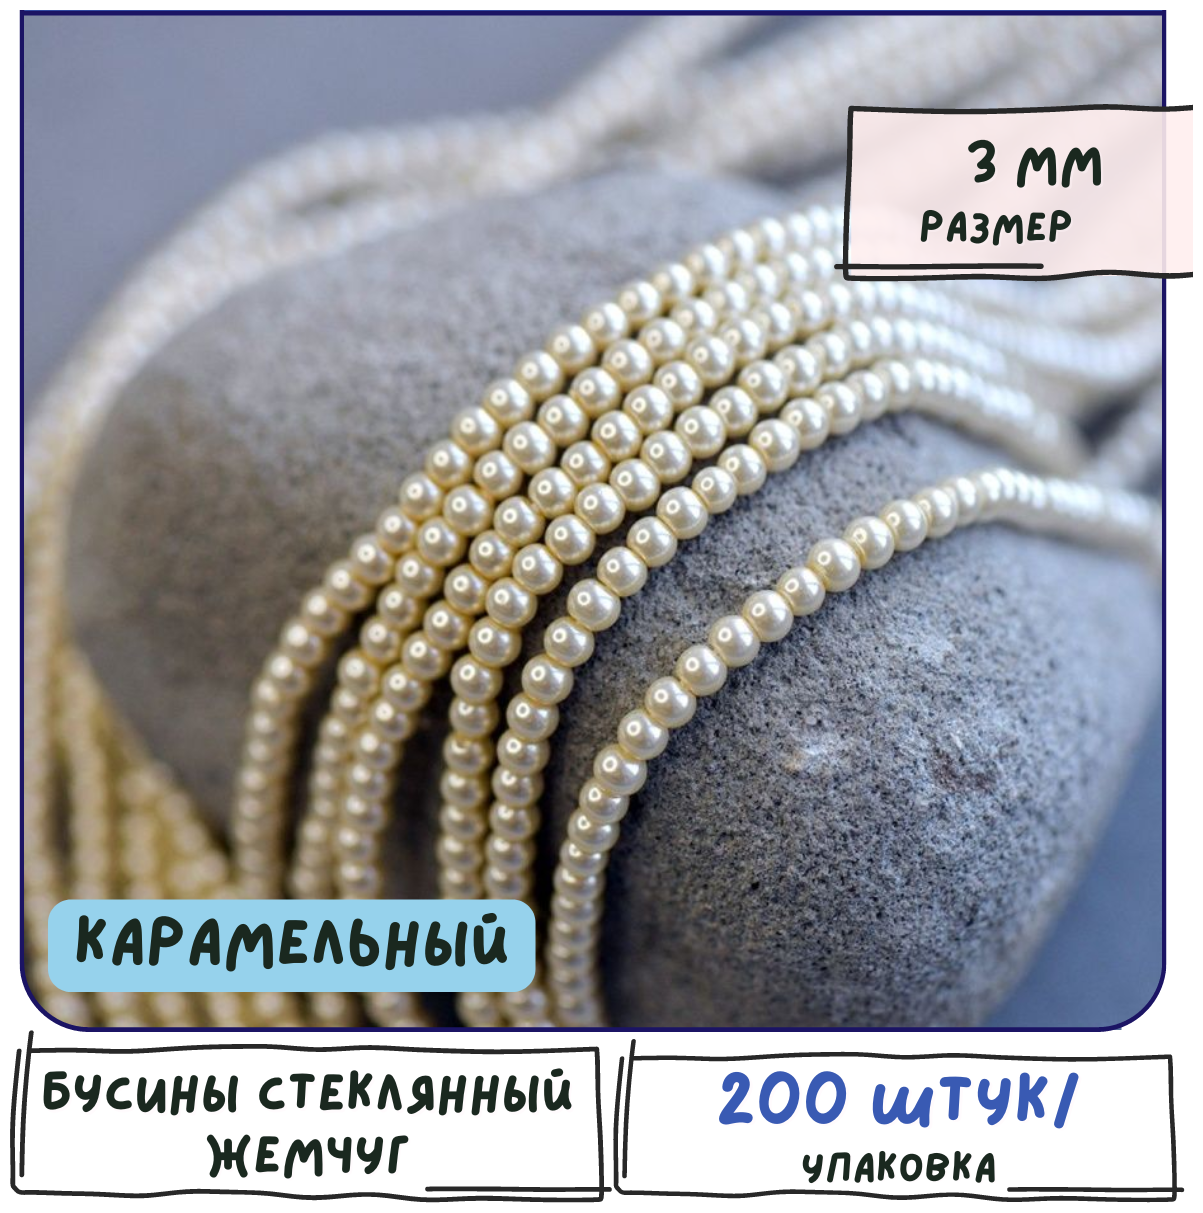 Бусины стеклянный жемчуг 200 шт, круглые, цвет карамельный, 3 мм